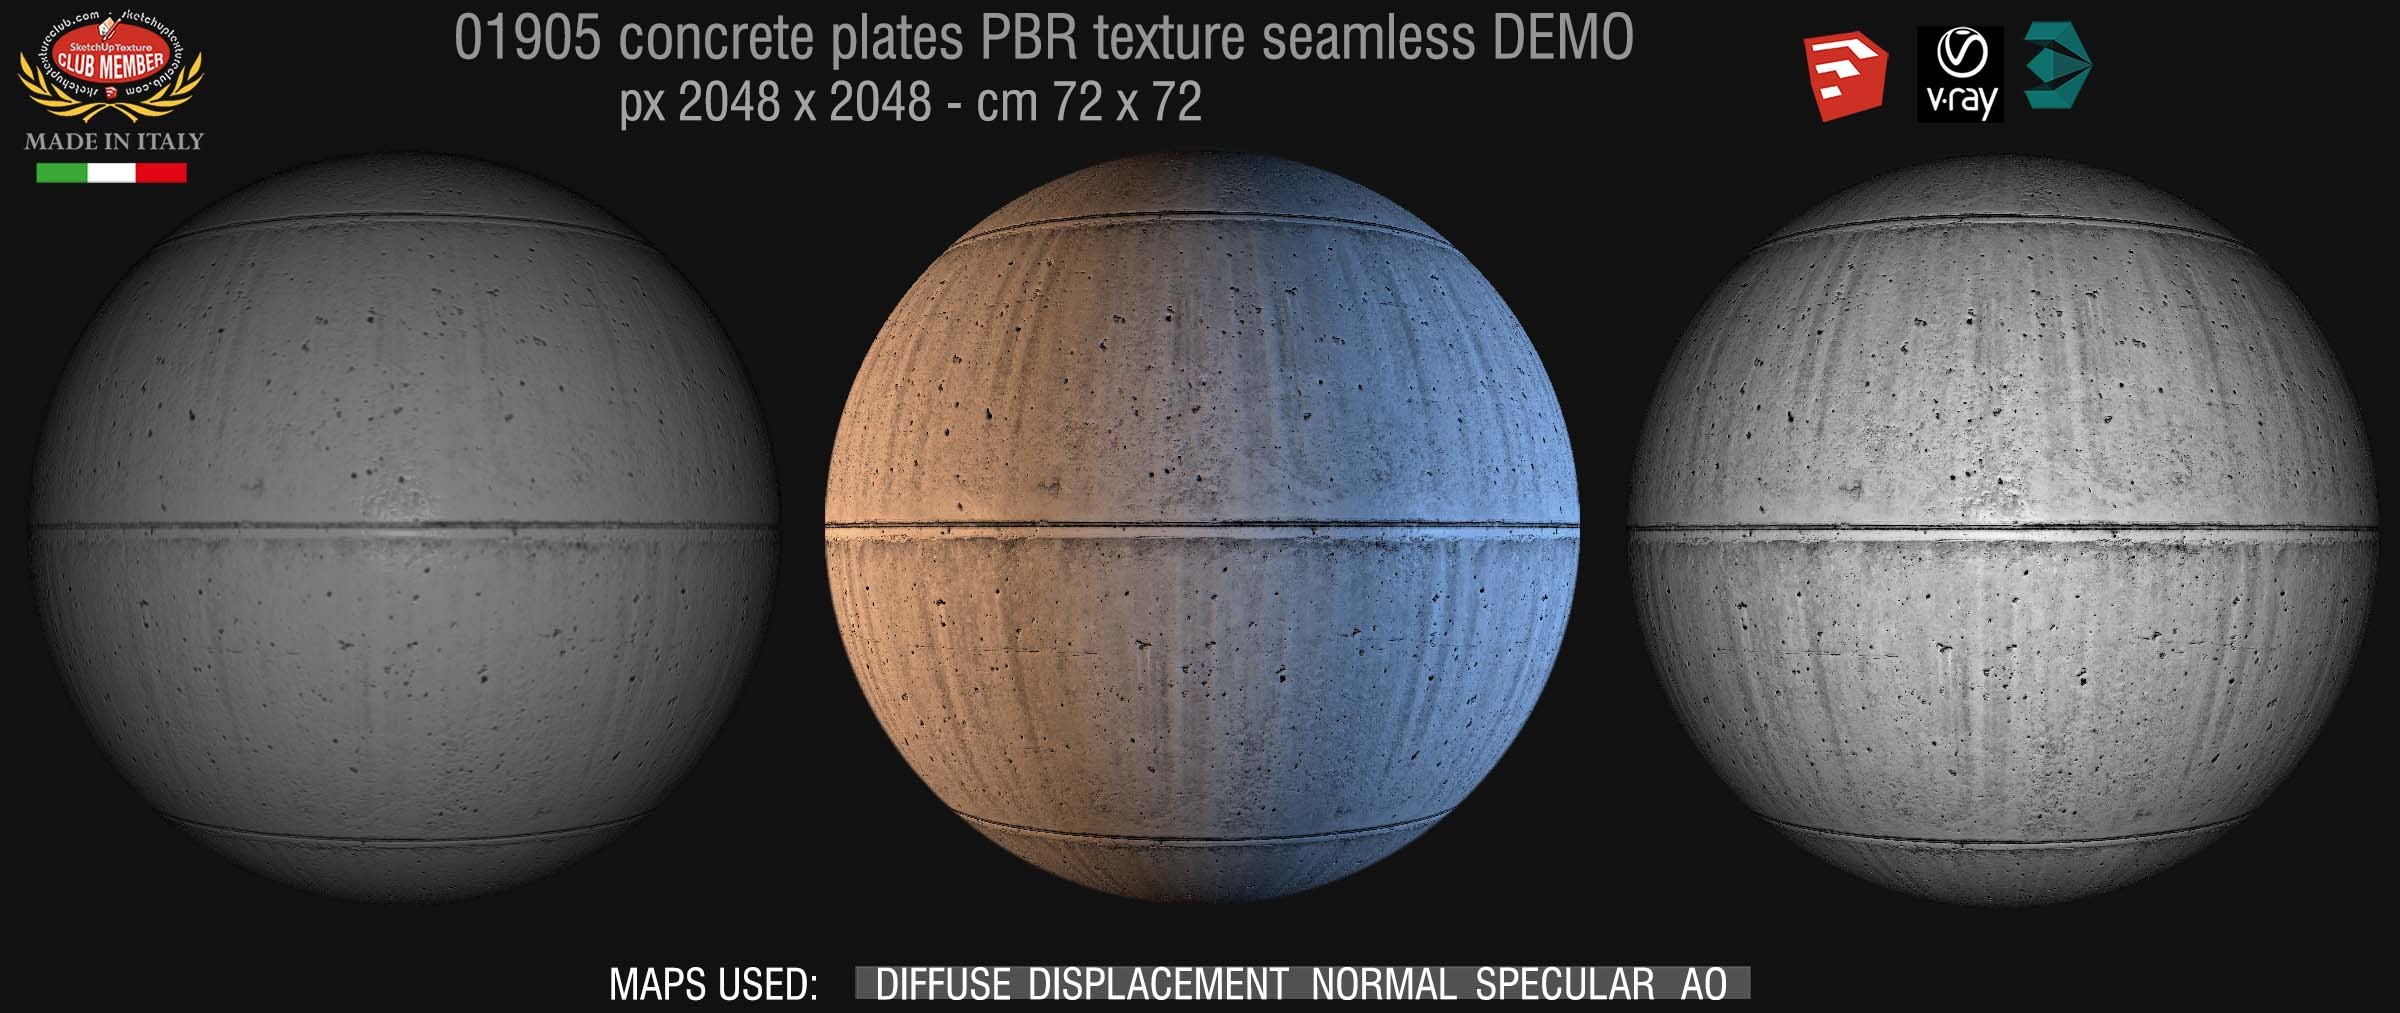 01905 Tadao ando concrete dirty plates PBR seamless texture DEMO